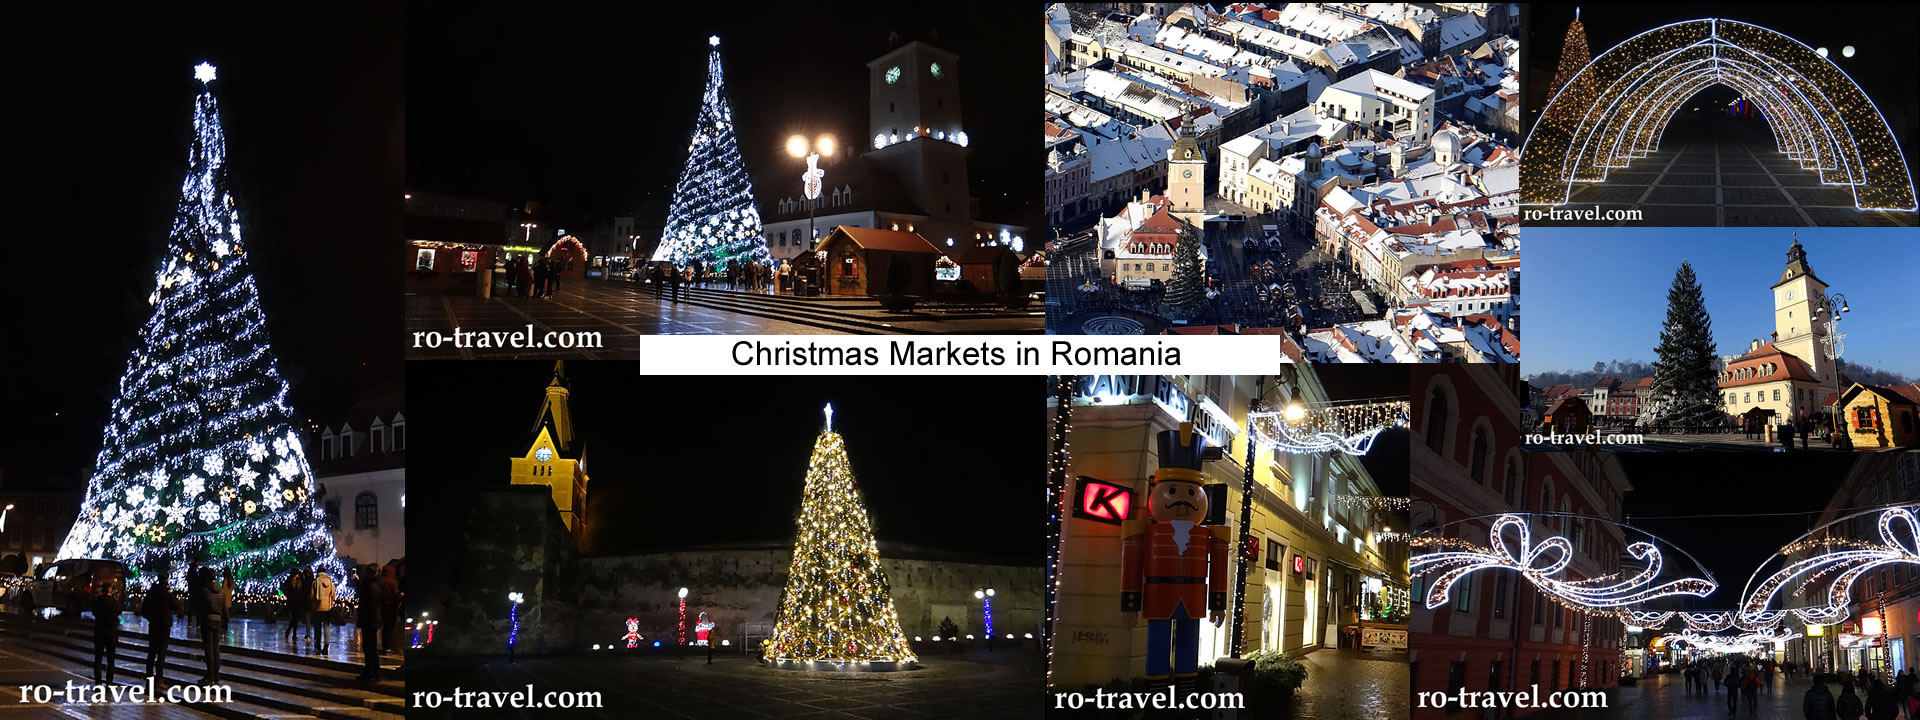 Cristmas Markets in Romania